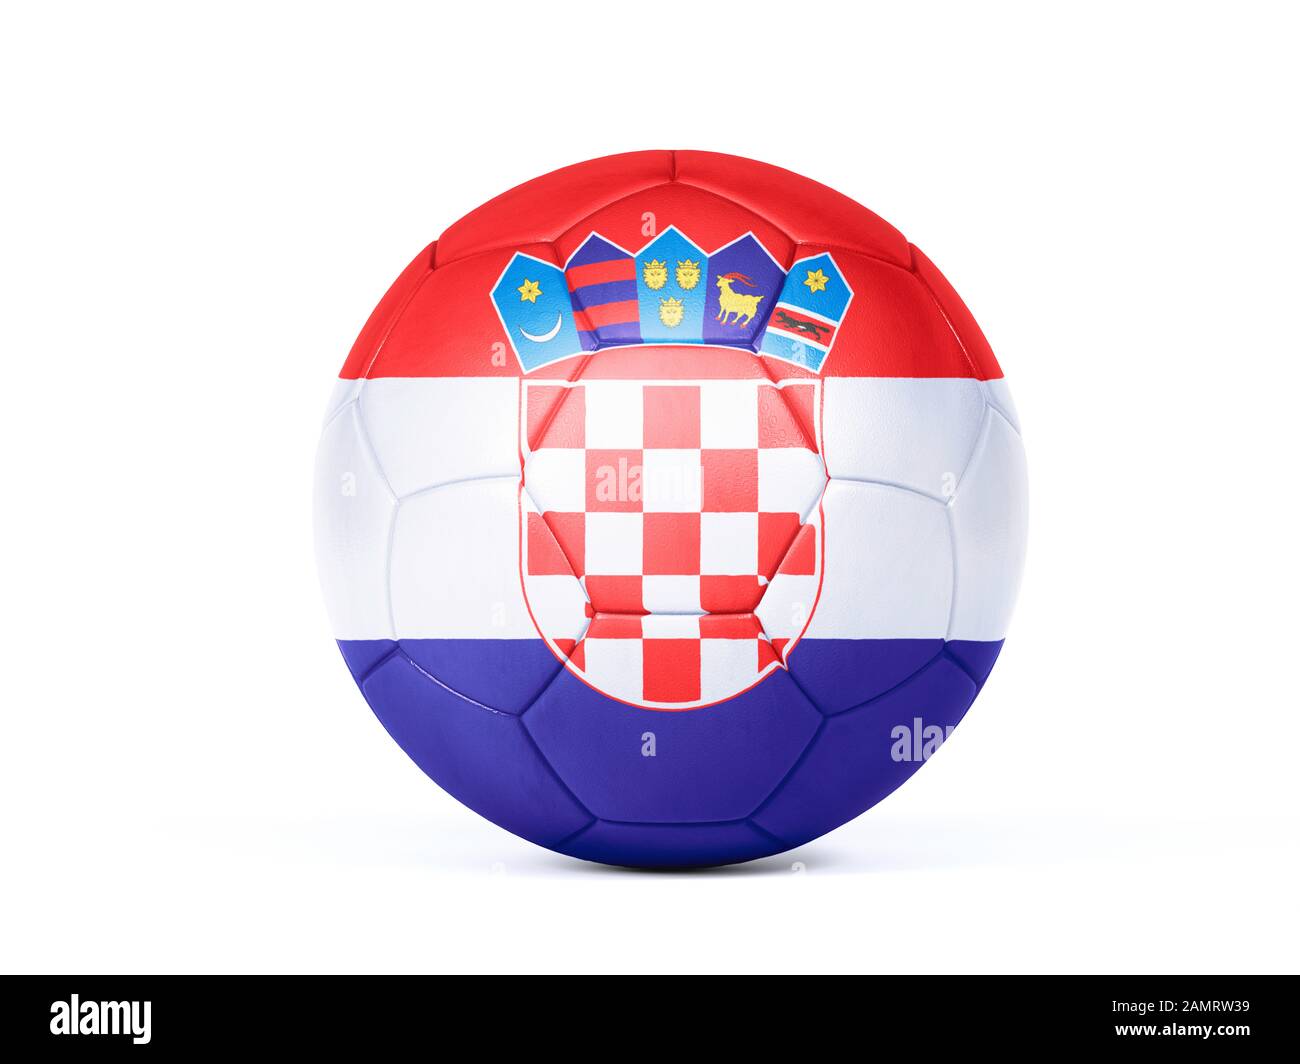 Pallone da calcio o da calcio con i colori della bandiera nazionale croata concettuale del supporto di squadra in campionati o la Coppa del mondo isolato su bianco Foto Stock